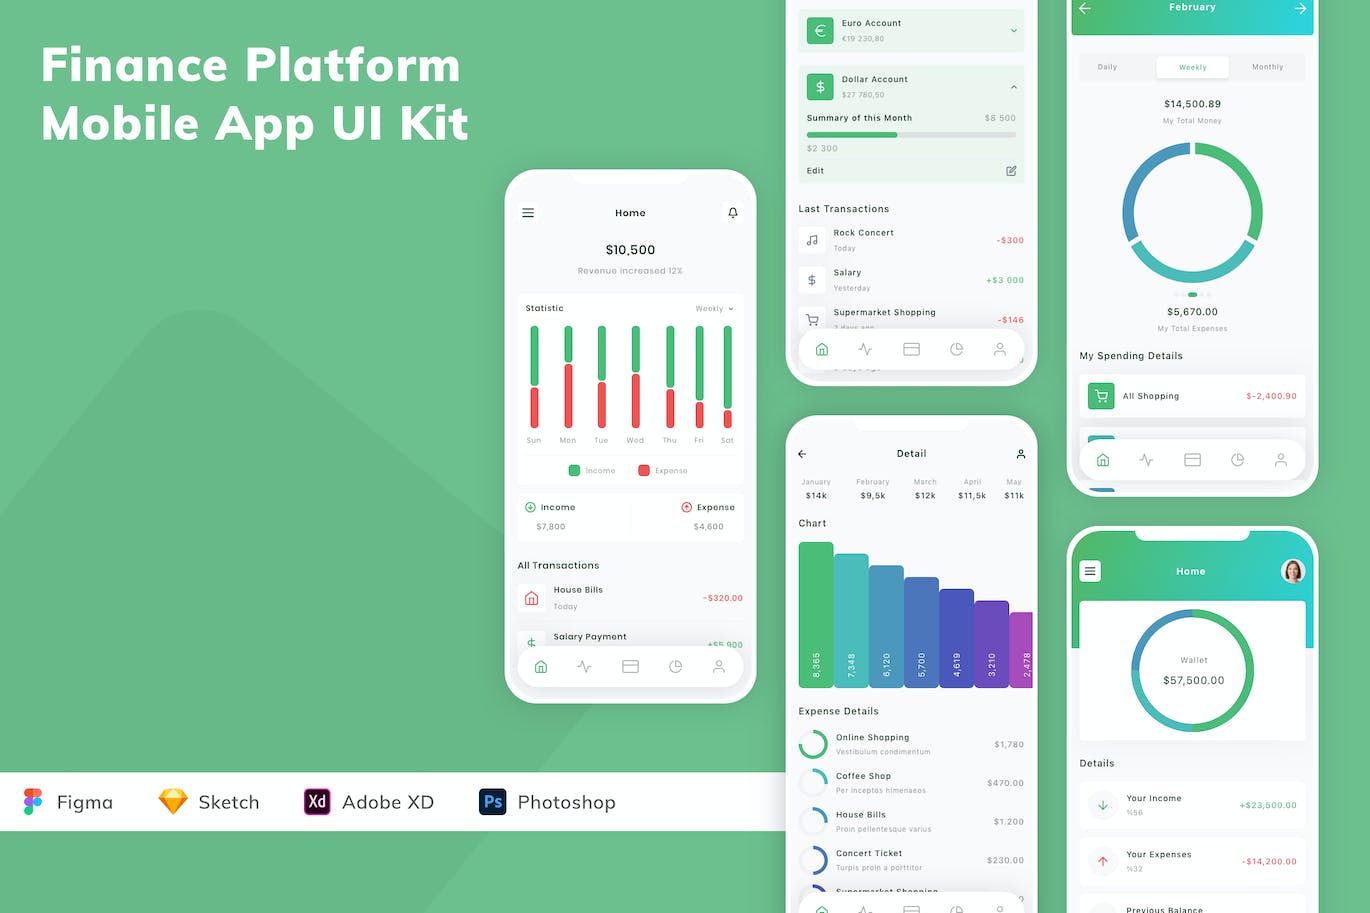 金融平台App UI Kit (FIG,SKETCH,XD,PSD)